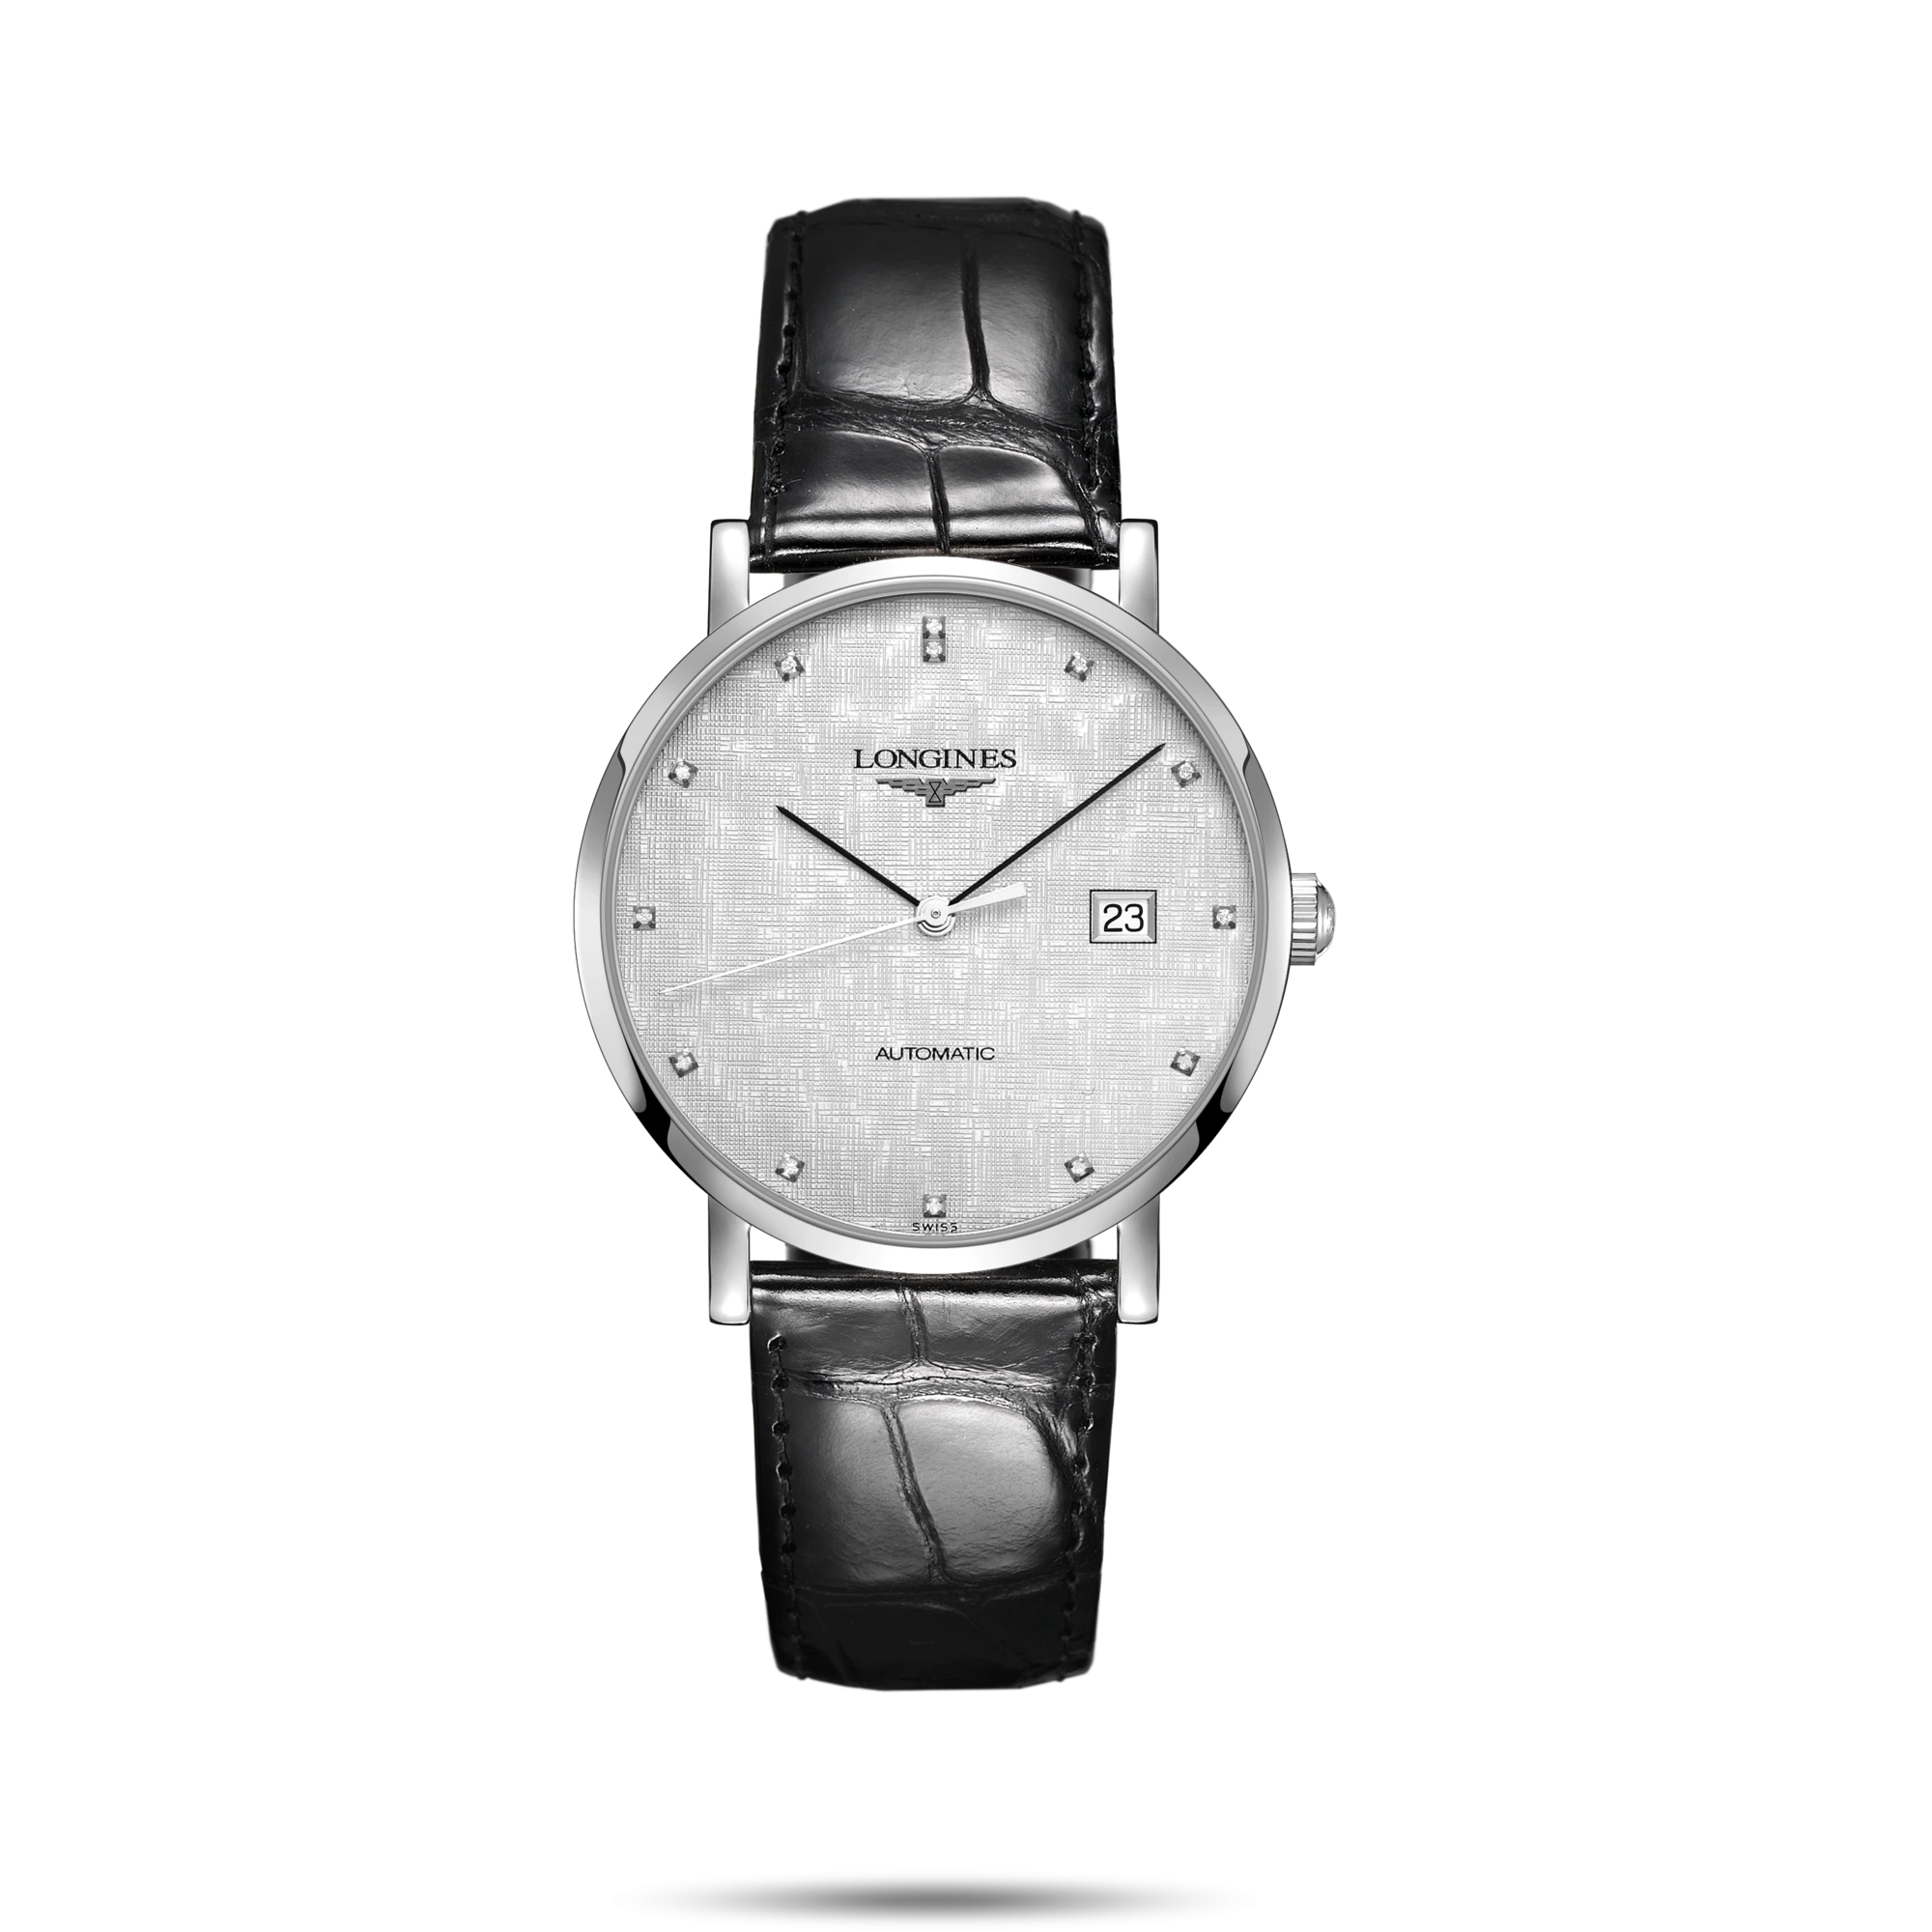 ساعت لونژین مدل L4.910.4.77.2